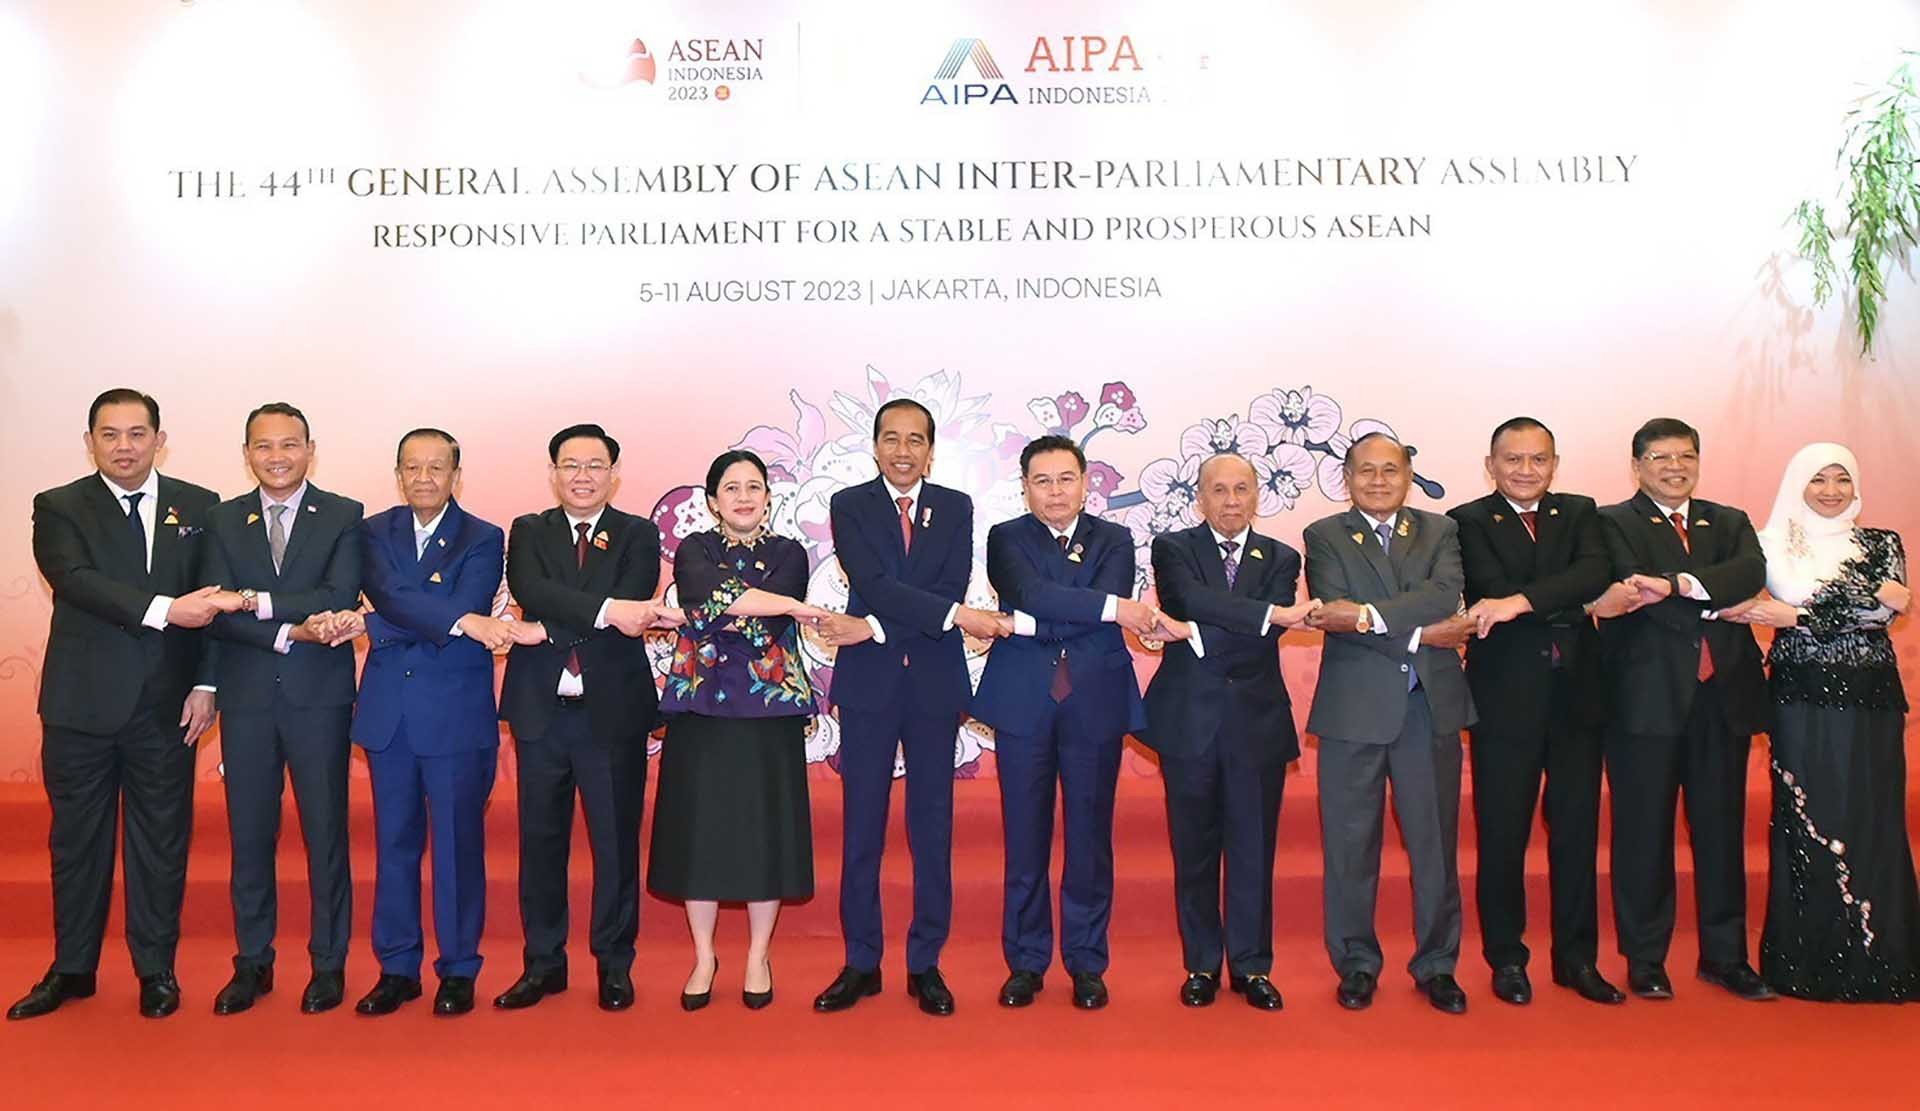 Chủ tịch Quốc hội Vương Đình Huệ và Tổng thống Indonesia Joko Widodo, Chủ tịch Hạ viện Indonesia, Chủ tịch AIPA 2023 Puan Maharani cùng đại biểu chụp ảnh lưu niệm. (Nguồn: TTXVN)